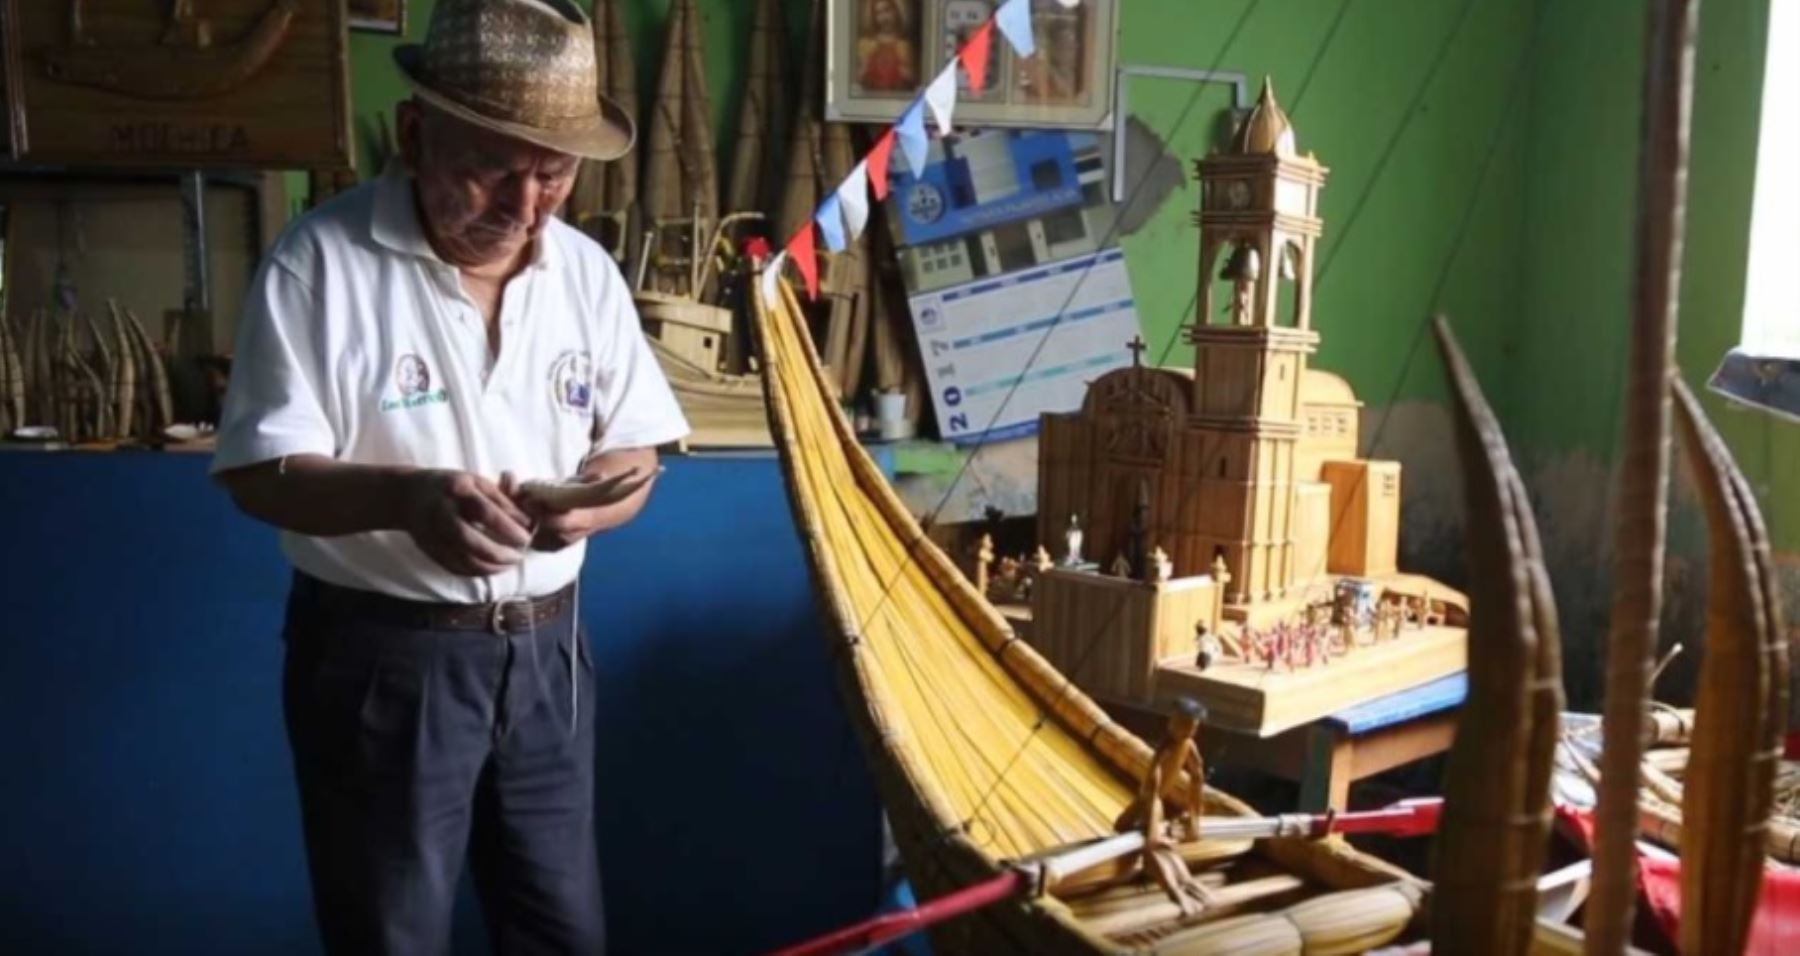 El Ministerio de Cultura inauguró hoy “Ruraq Maki: Hecho a Mano”, la feria artesanal más importante del Perú que este año reúne en la sala Kuélap a 130 colectivos de maestros artesanos en una exposición venta de su arte popular y tradicional.